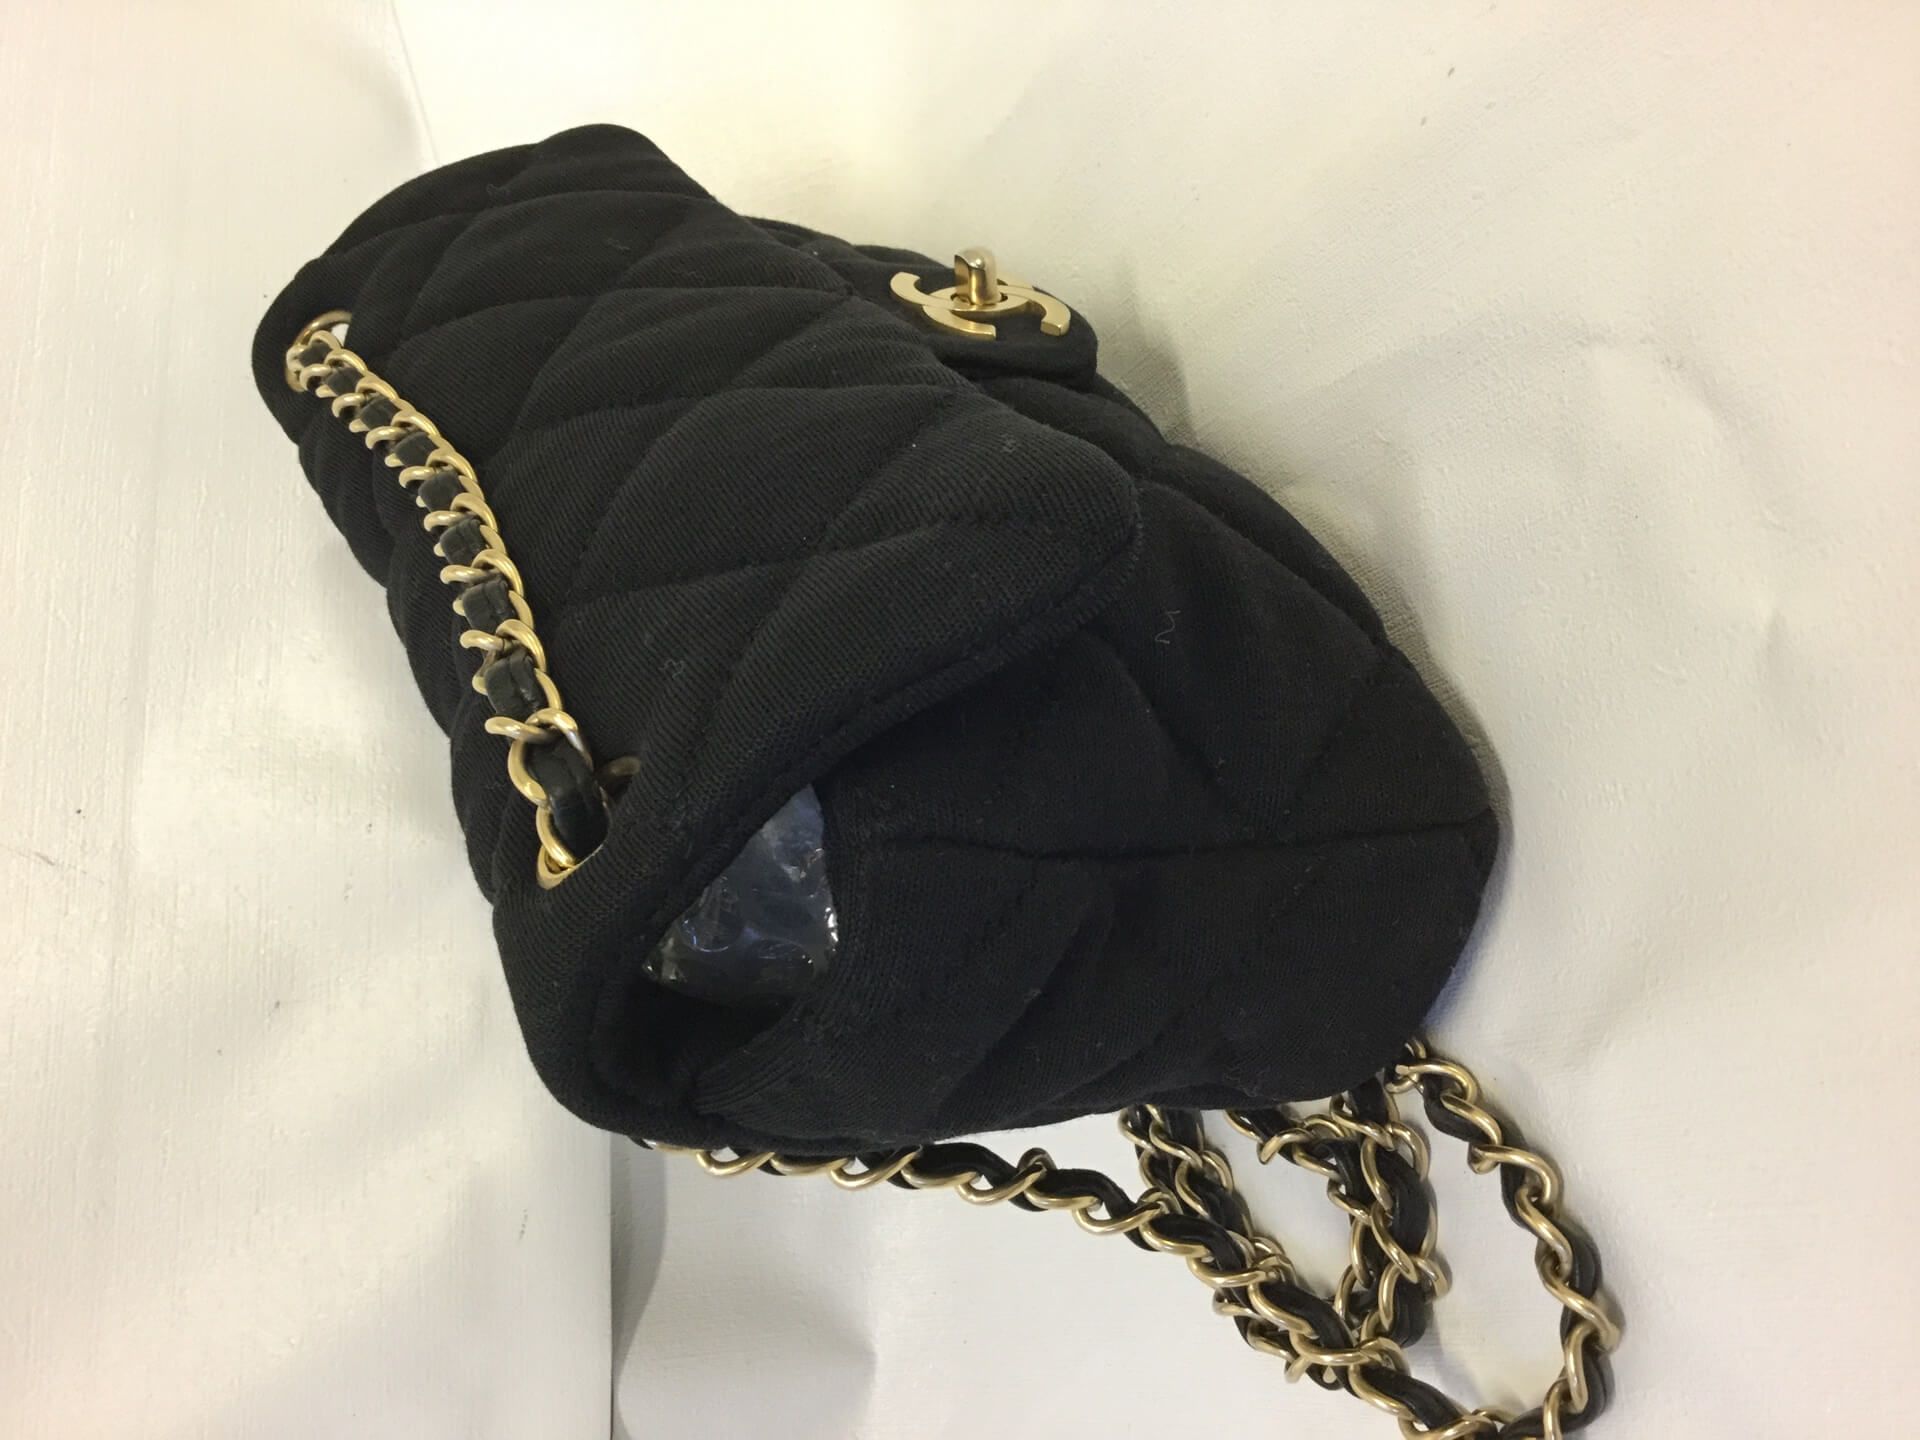 Chanel 2.55 Jersey Black Vintage Shoulder Bag - Image 4 of 5